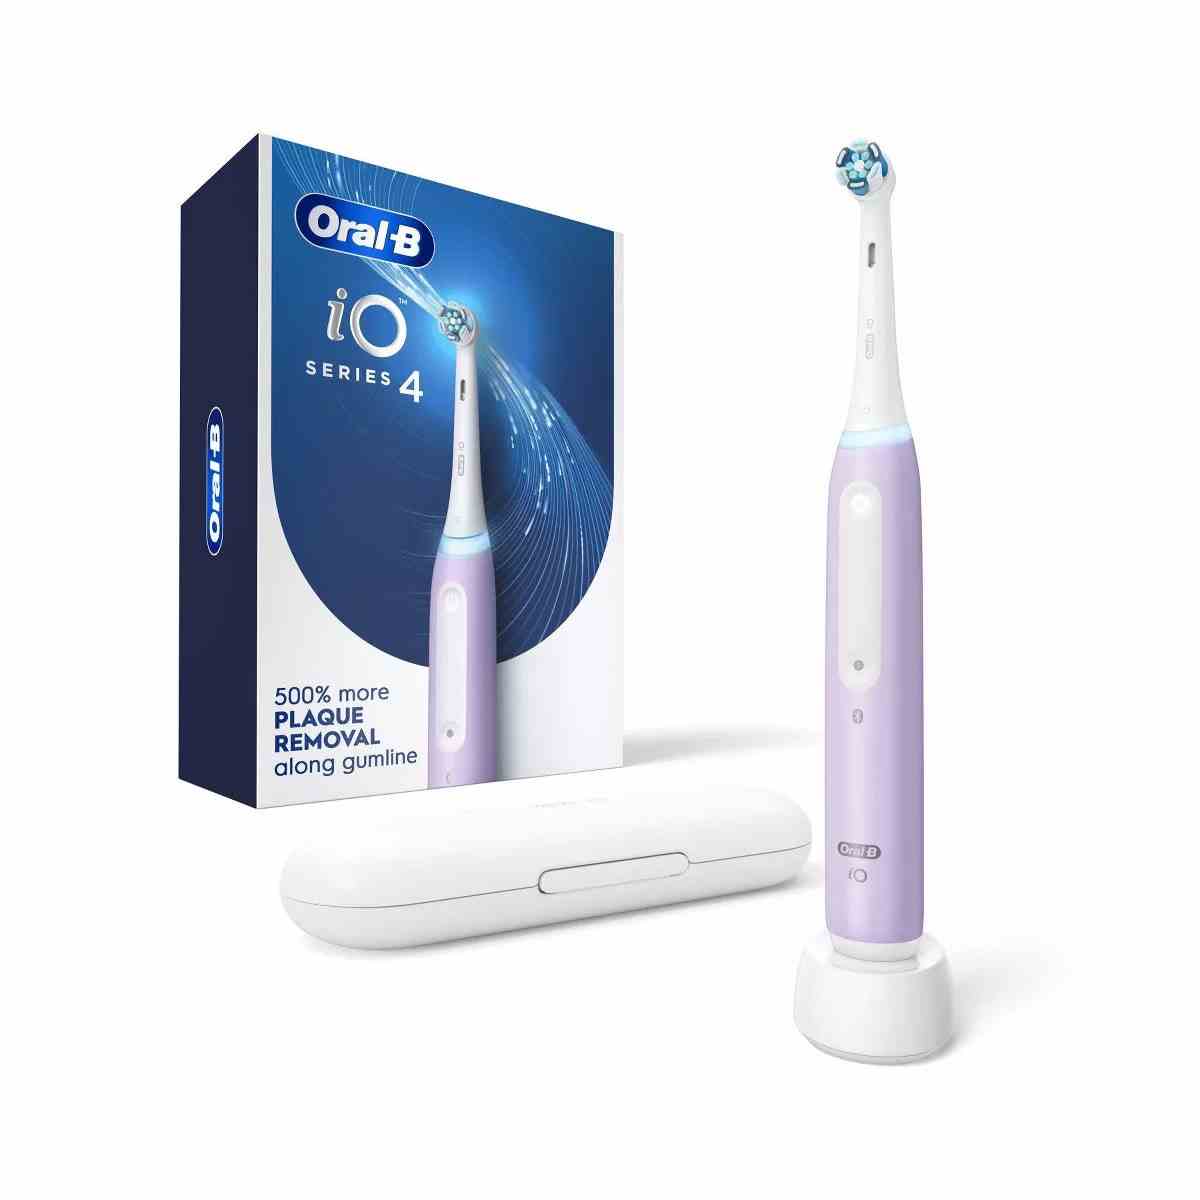 Oral-B iO Serie 4 elektrische Zahnbürste mit Bürstenkopf lavendelfarbene Zahnbürste und blaue Box auf weißem Hintergrund